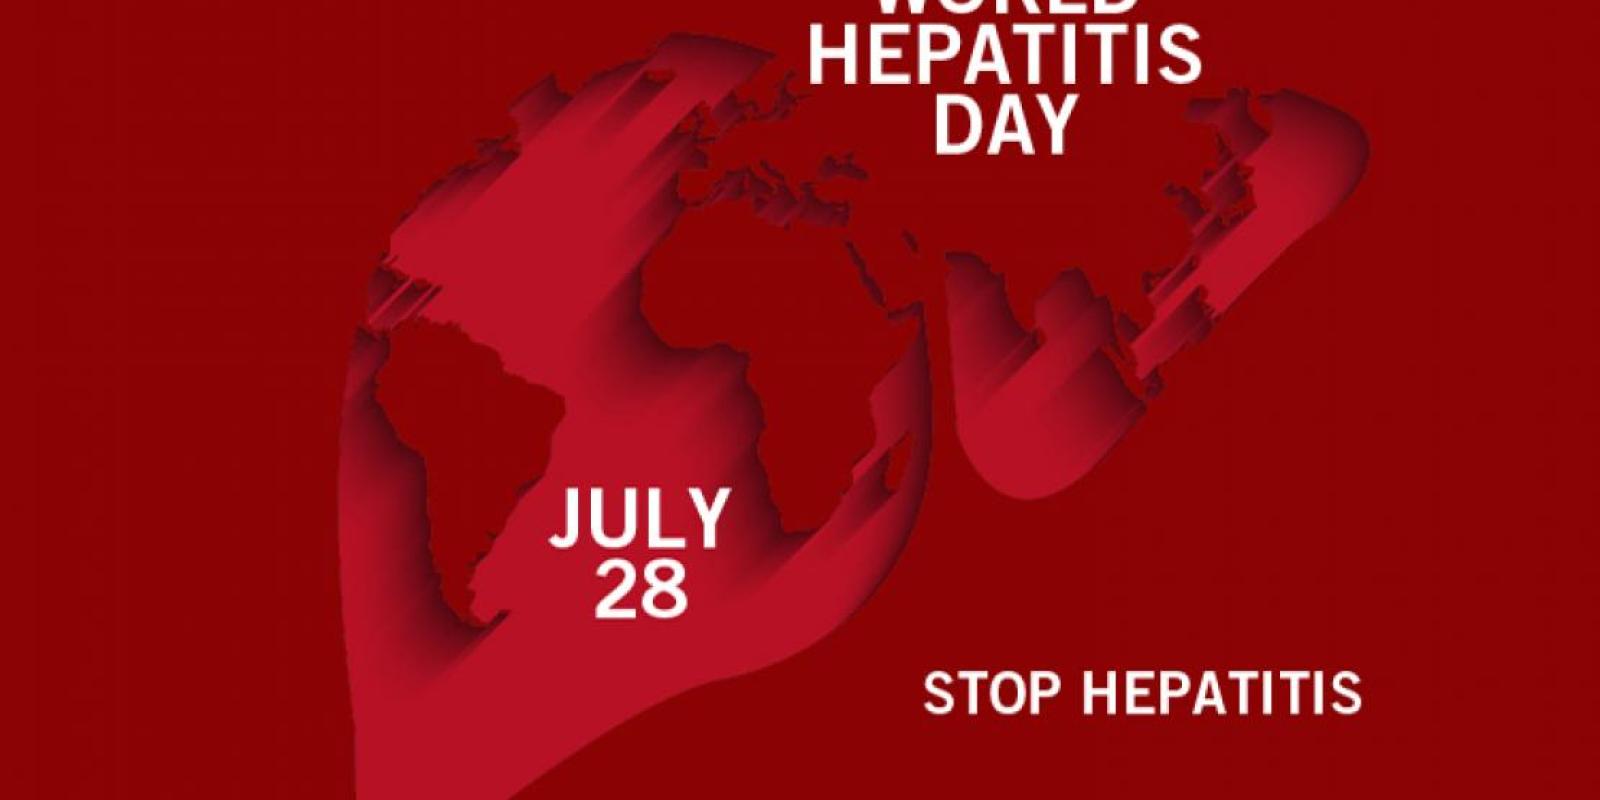 Banner of hepatitis day